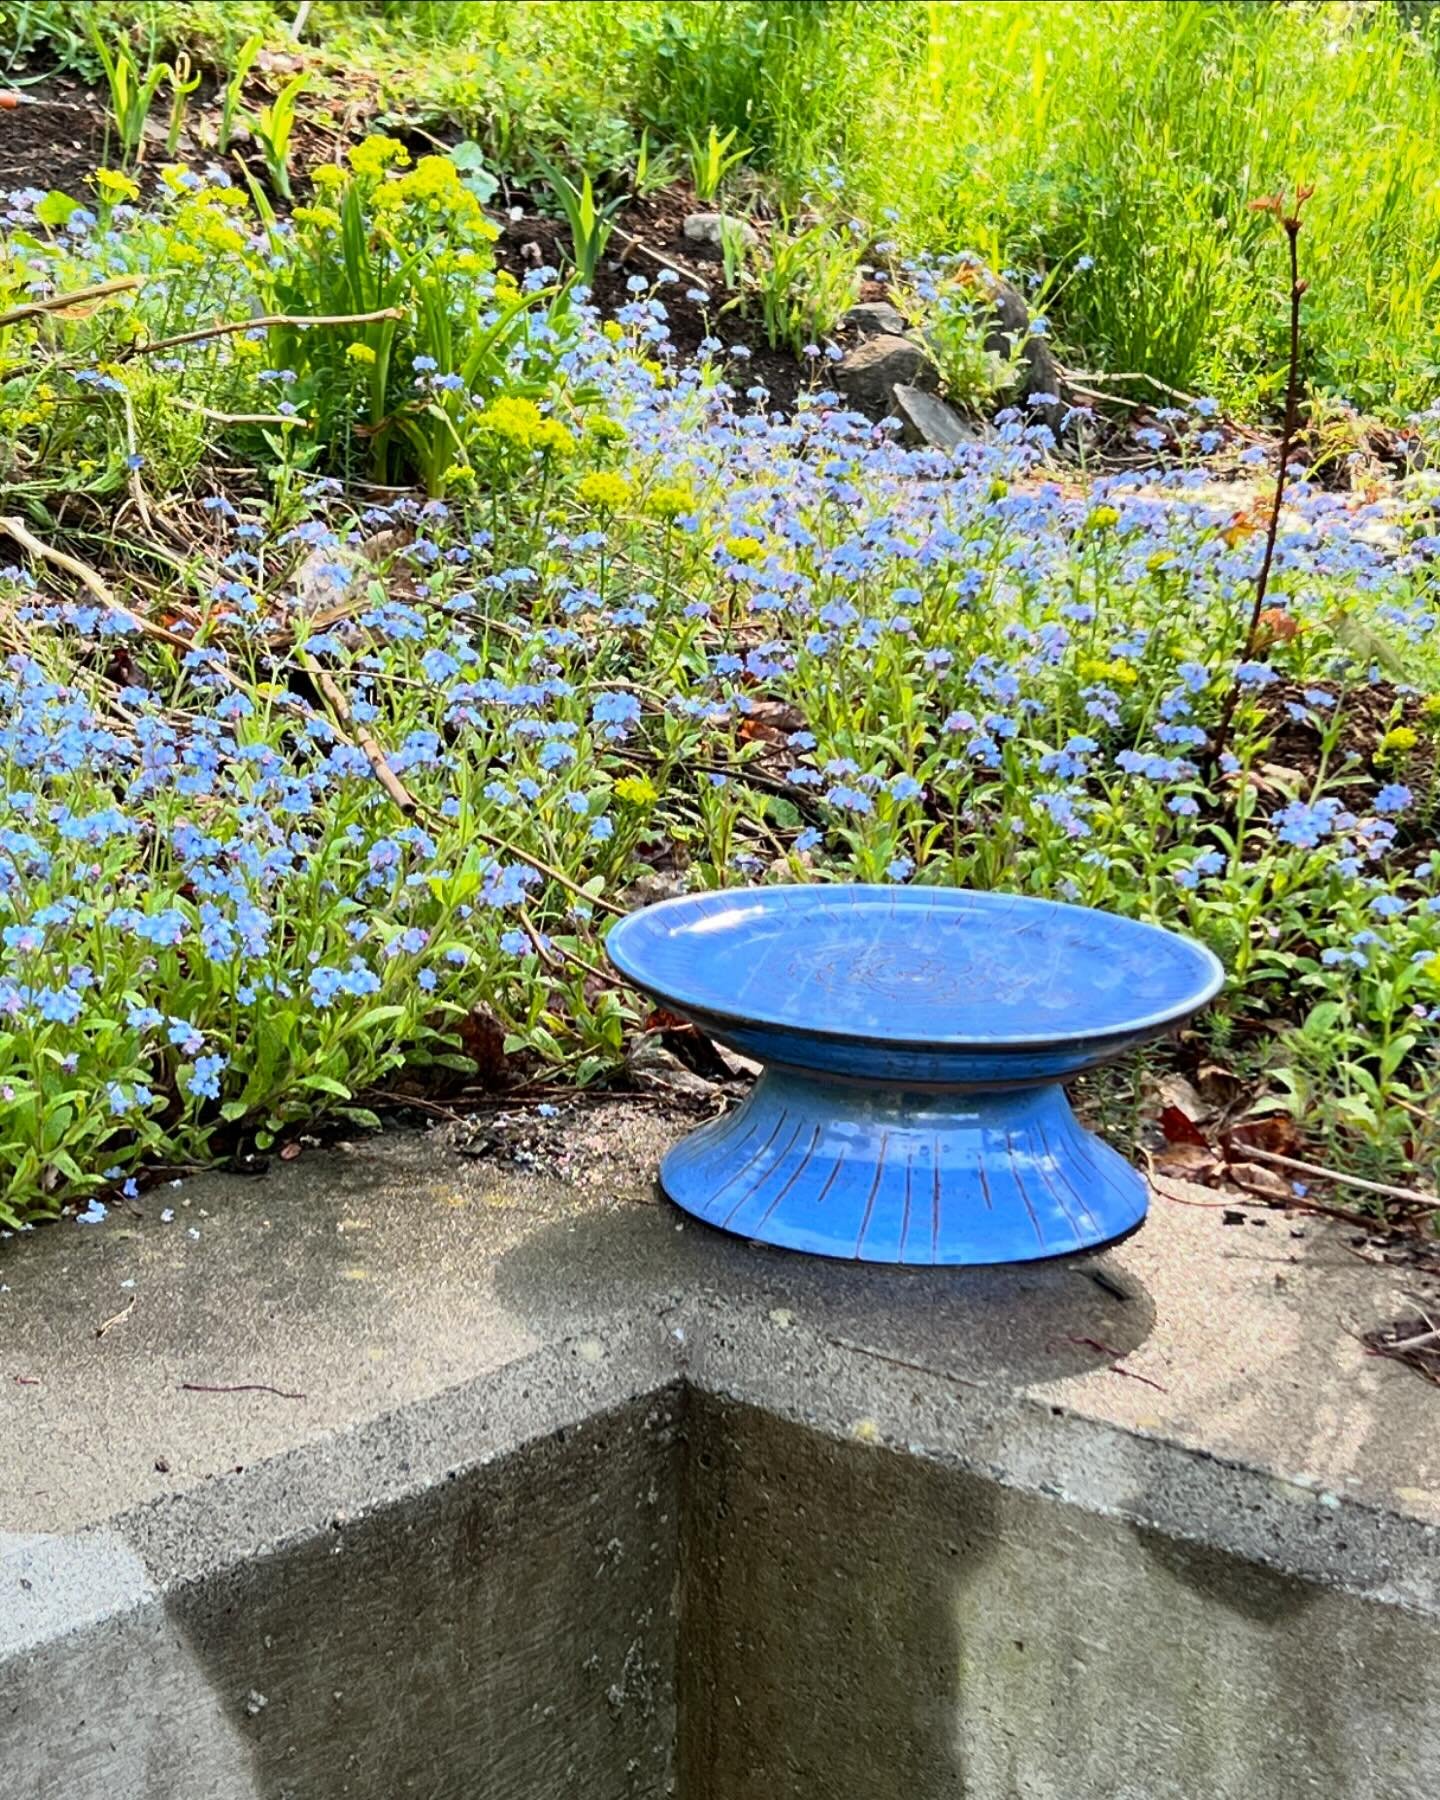 Blue Bird Bath. Hopefully the birds will be anything but blue when they arrive at this water station ❤️🦜#birdbath #birdbaths #starpuddingfarm #ceramicbirdbath #madeinvermont #vermontmade #vermontartist #birds #forthebirds #gardening #gardenlove #gar